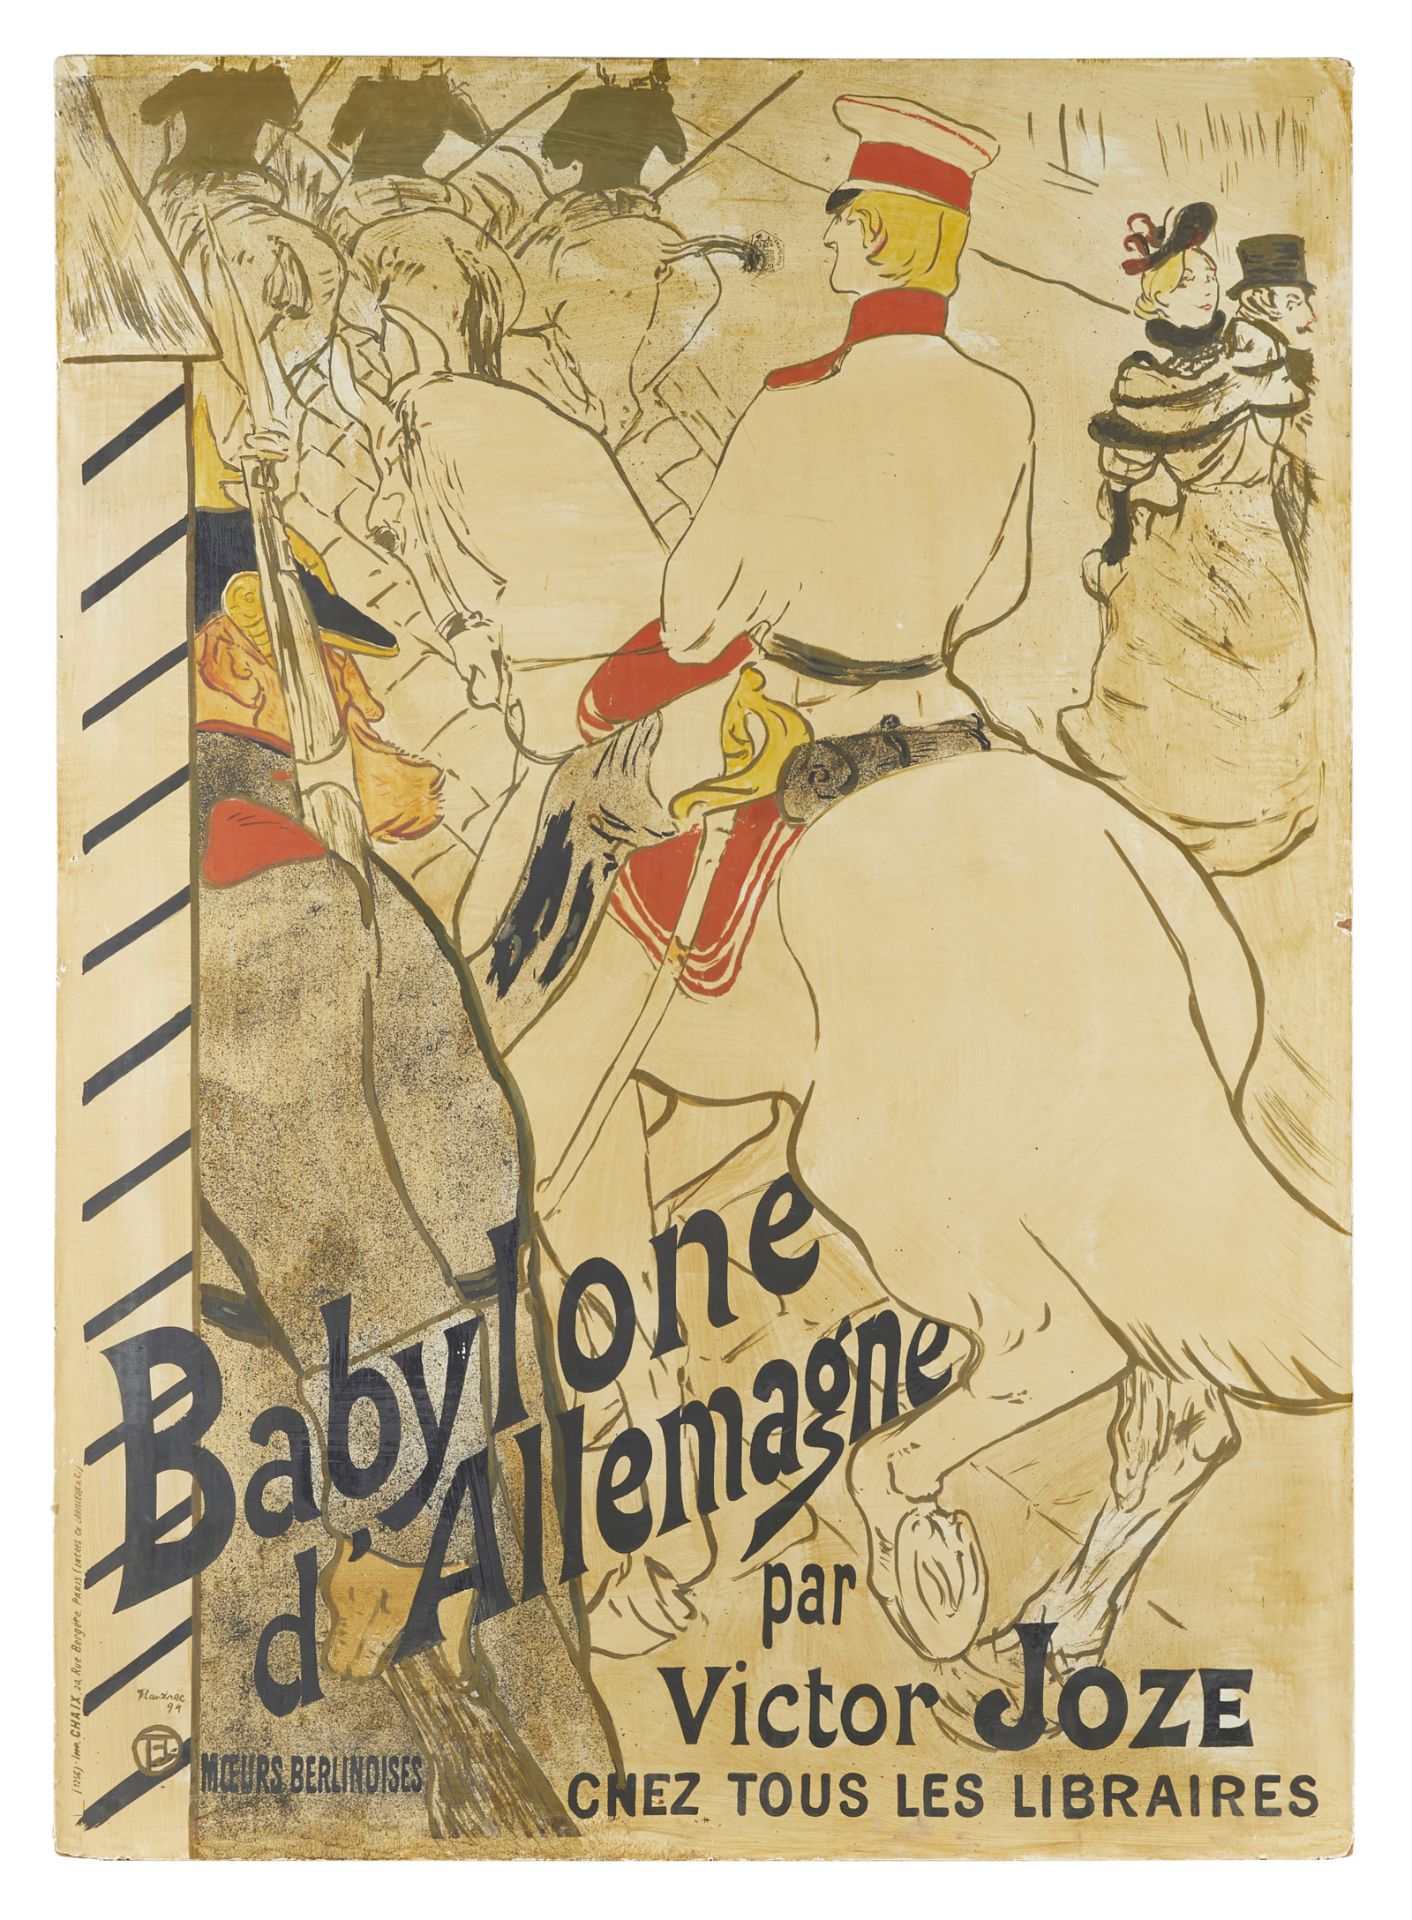 Toulouse-Lautrec "Babylone d'Allemagne" Poster - Bild 3 aus 7